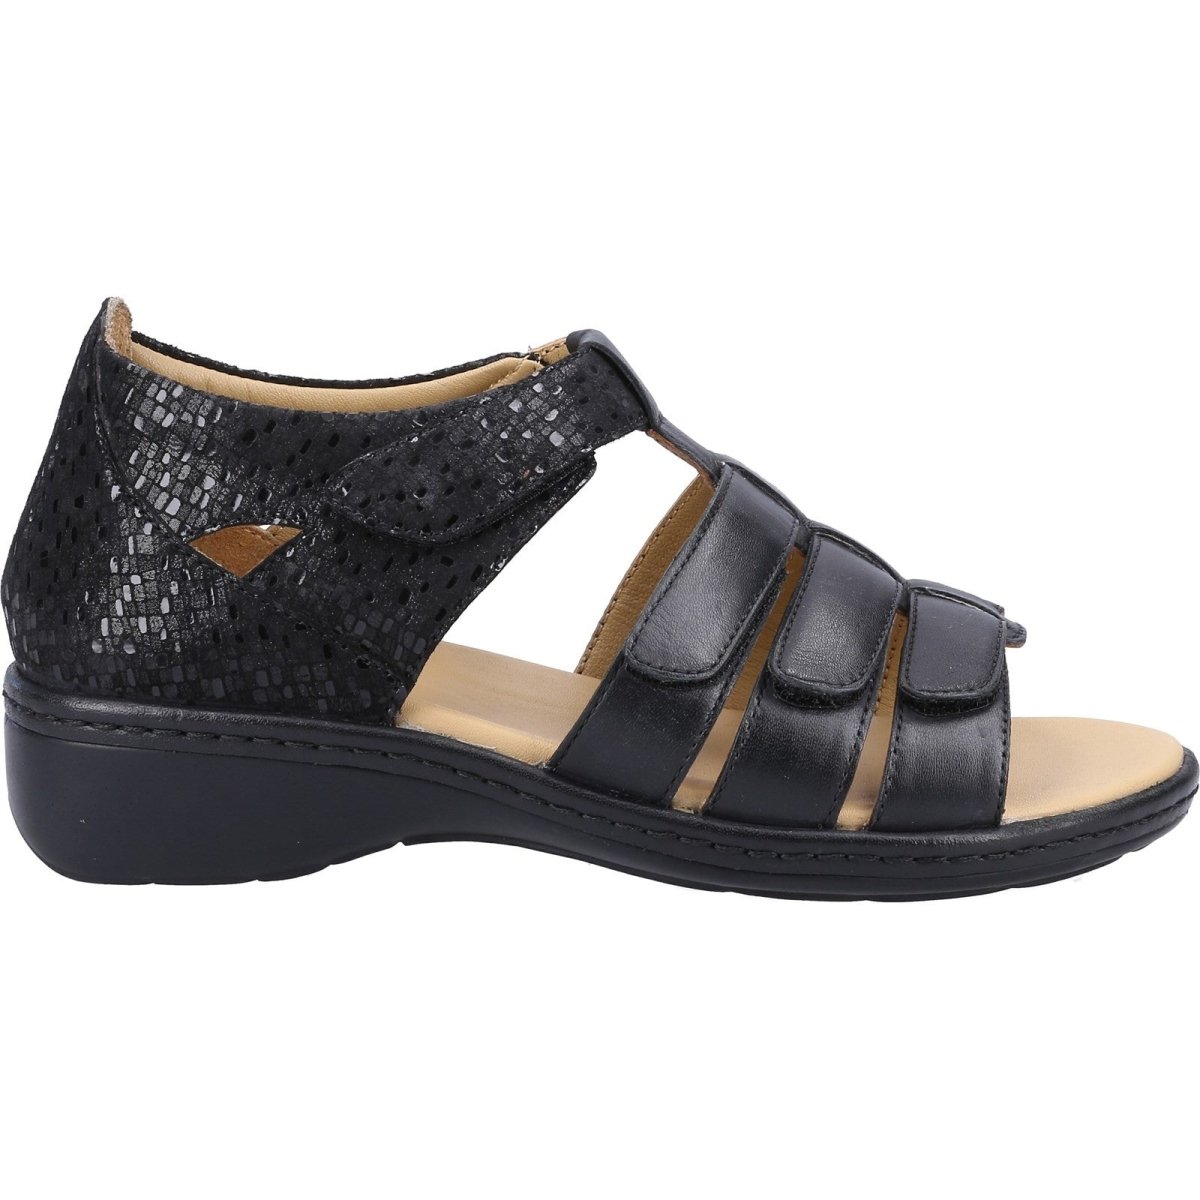 Fleet & Foster Julie Ladies Touch-Fastening Summer Sandals - Shoe Store Direct